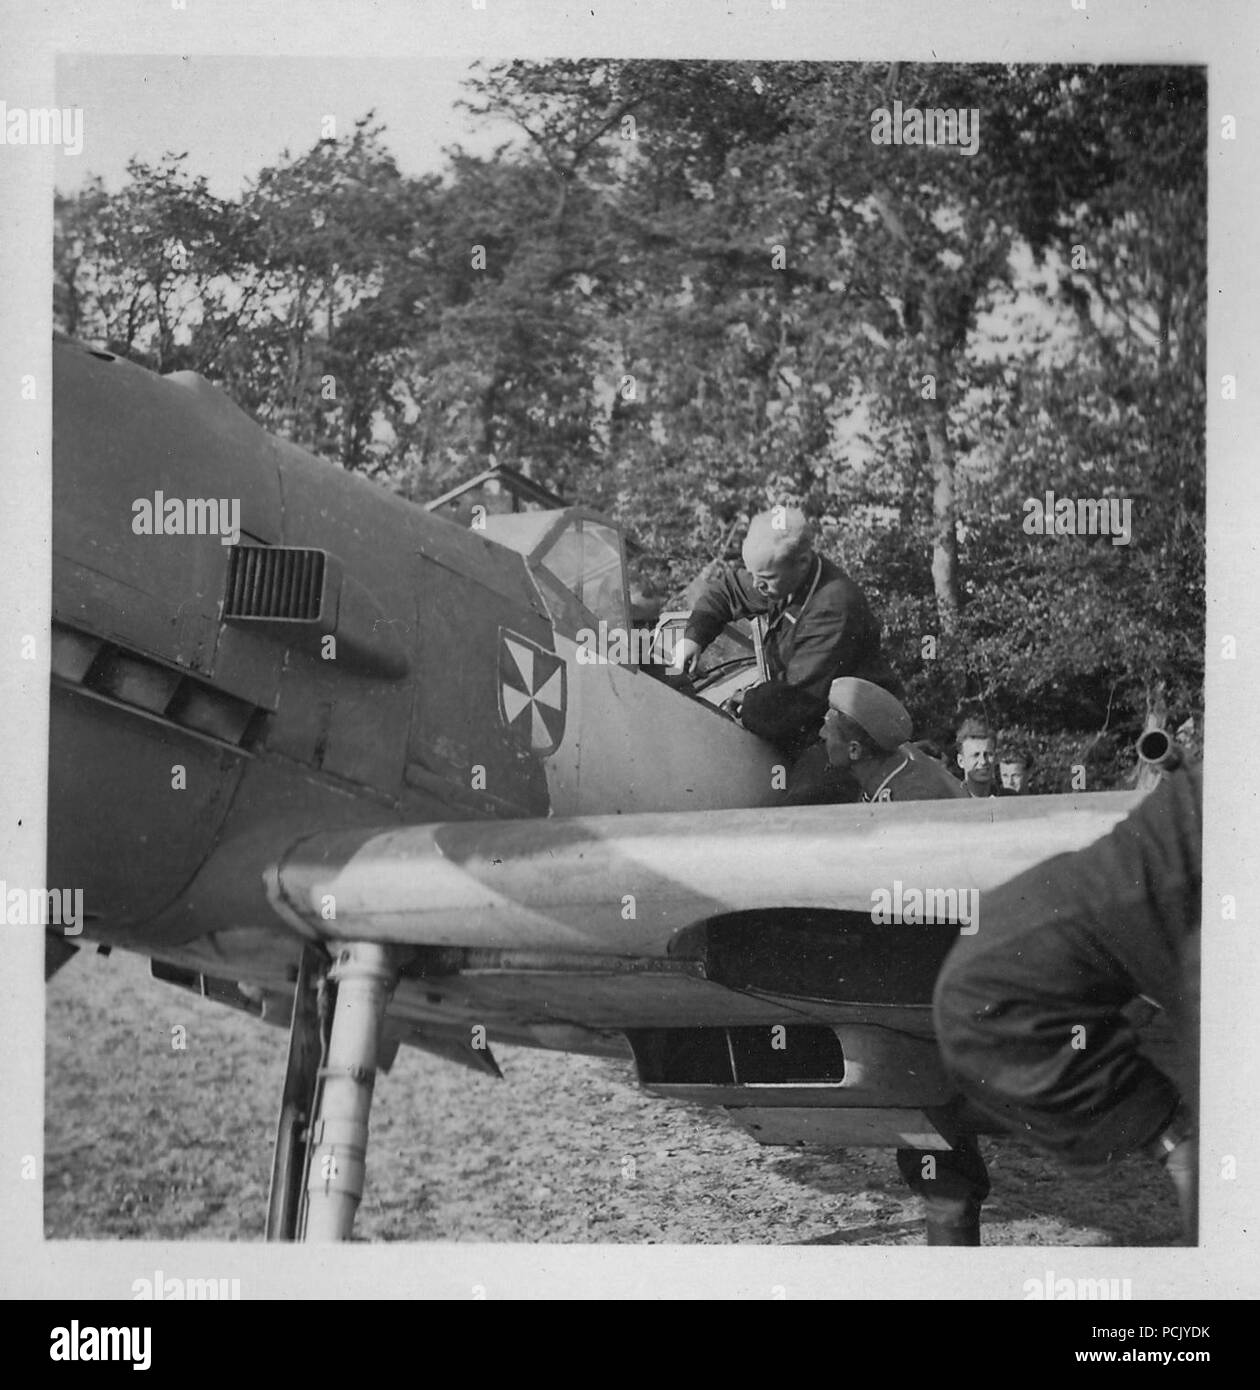 Immagine da un album di foto relative a II. Gruppe, Jagdgeschwader 3: Massa equipaggio aiutano a cinturino in Hauptmann Erich Woitke, Staffelkapitän di 6./JG3 e deliberando Gruppenkommandeur di II./JG3 dal 1 ottobre 1940 fino al 23 novembre 1940, come egli si prepara a prendere il via nel suo Messerschmitt Bf 109 e dal Wierre au Bois nell'estate del 1940. Foto Stock